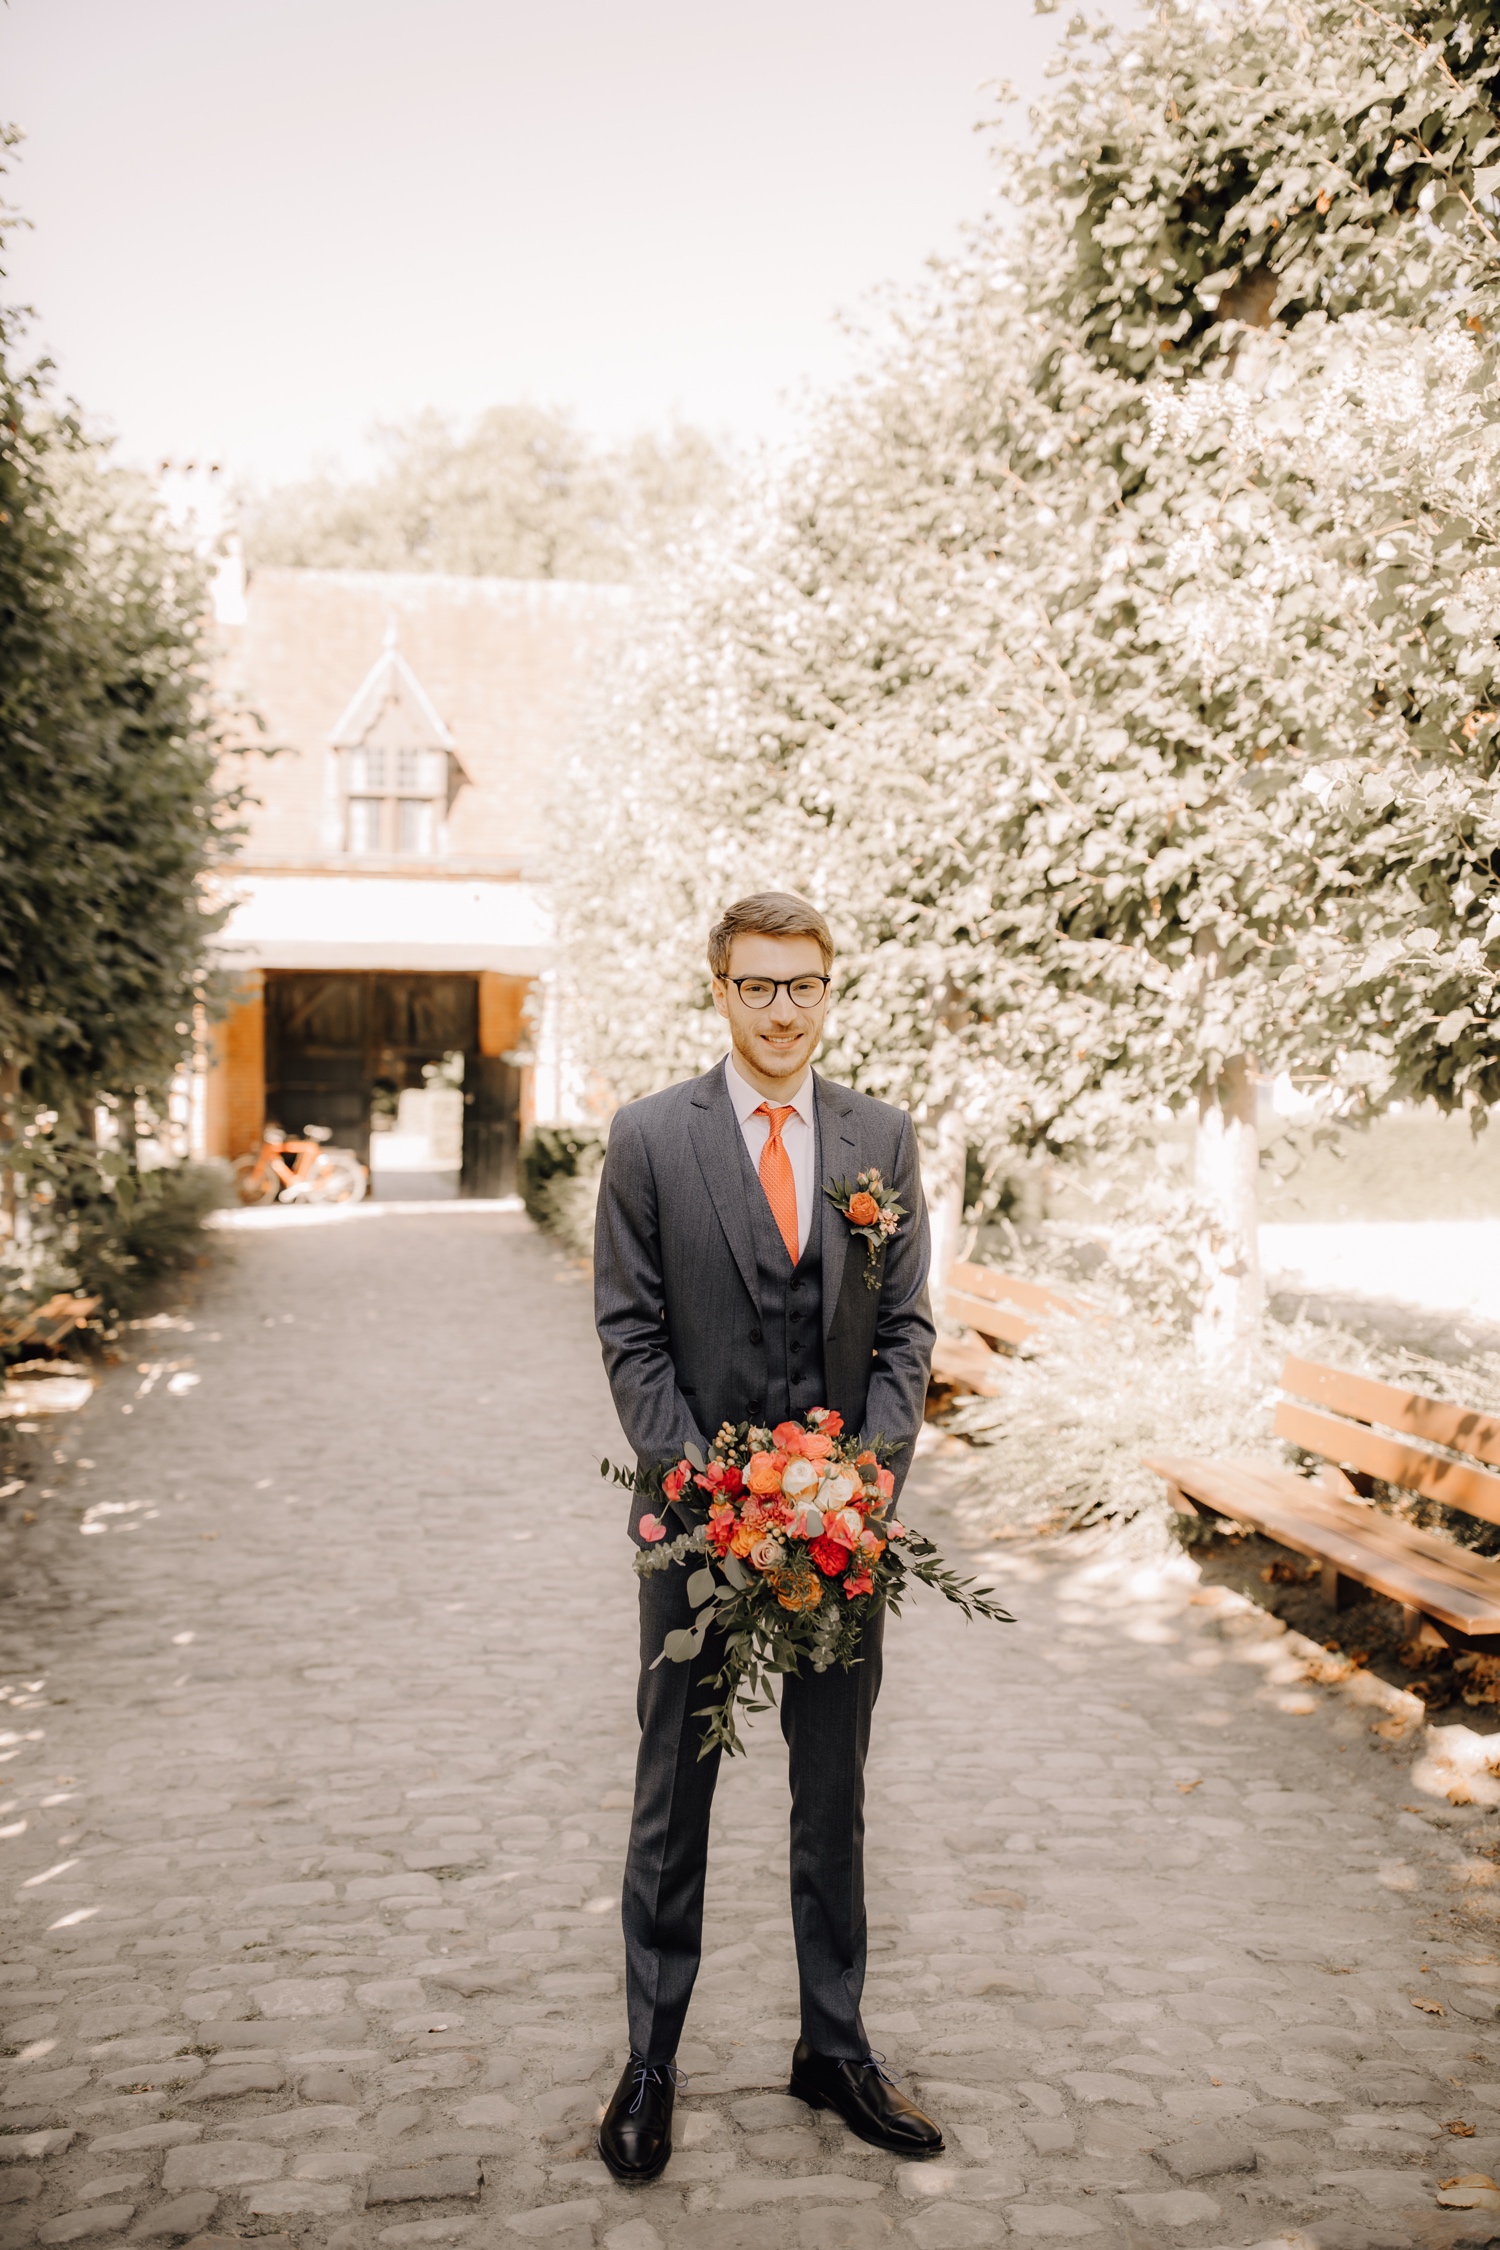 Huwelijksfotograaf Limburg - bruidegom wacht zijn bruid op tijdens first look